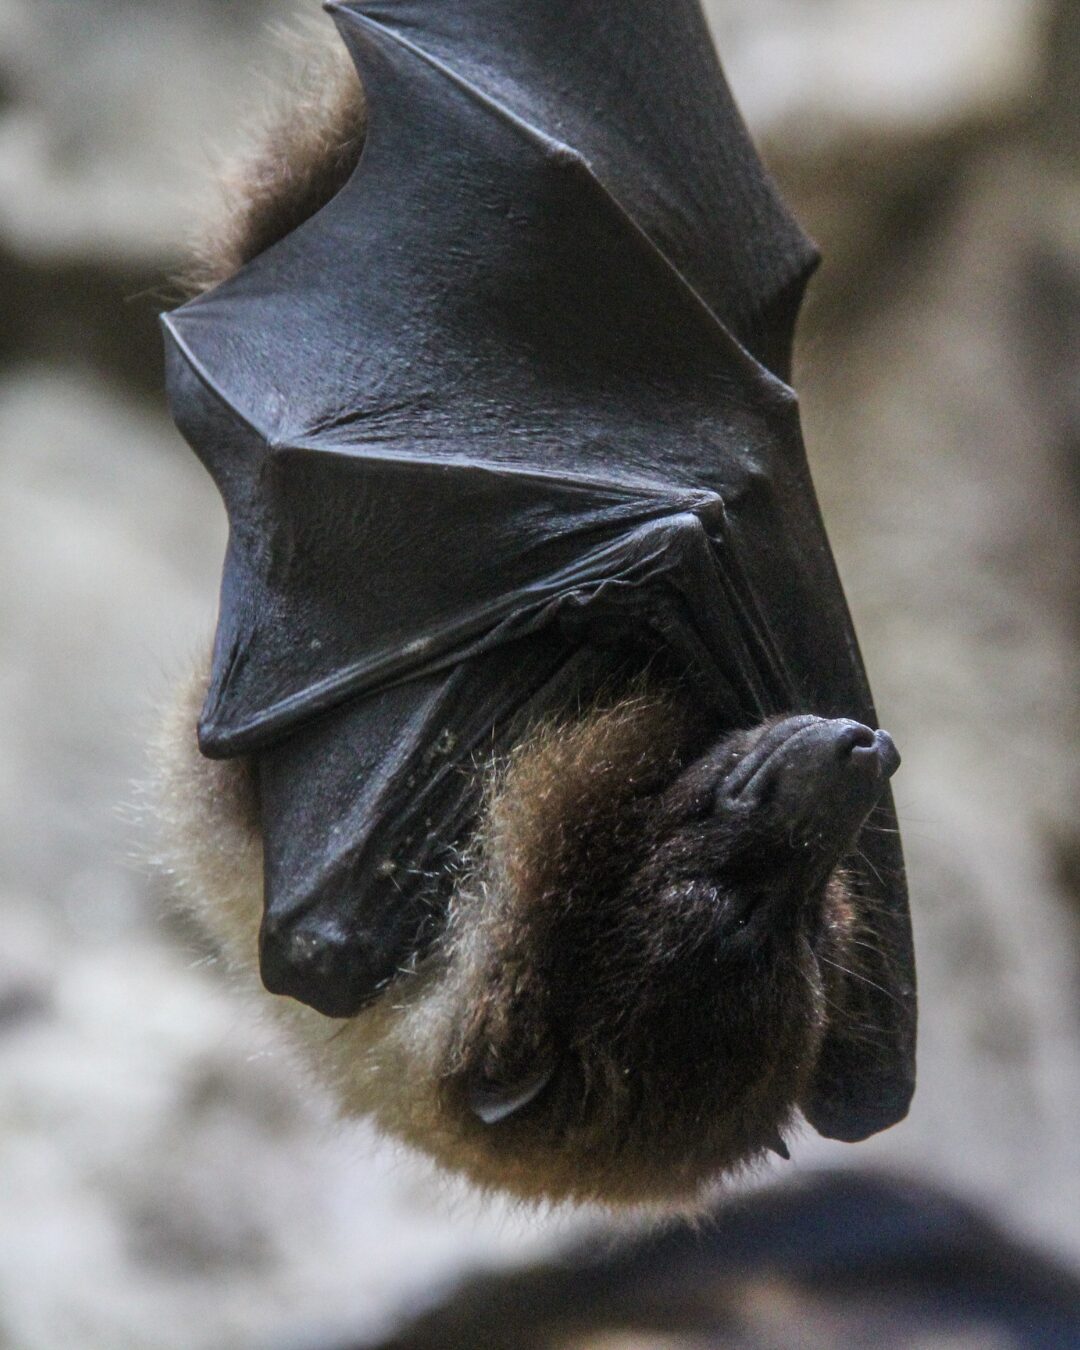 Surgimento de morcegos preocupa moradores e profissionais da saúde pelo risco de transmissão de doenças